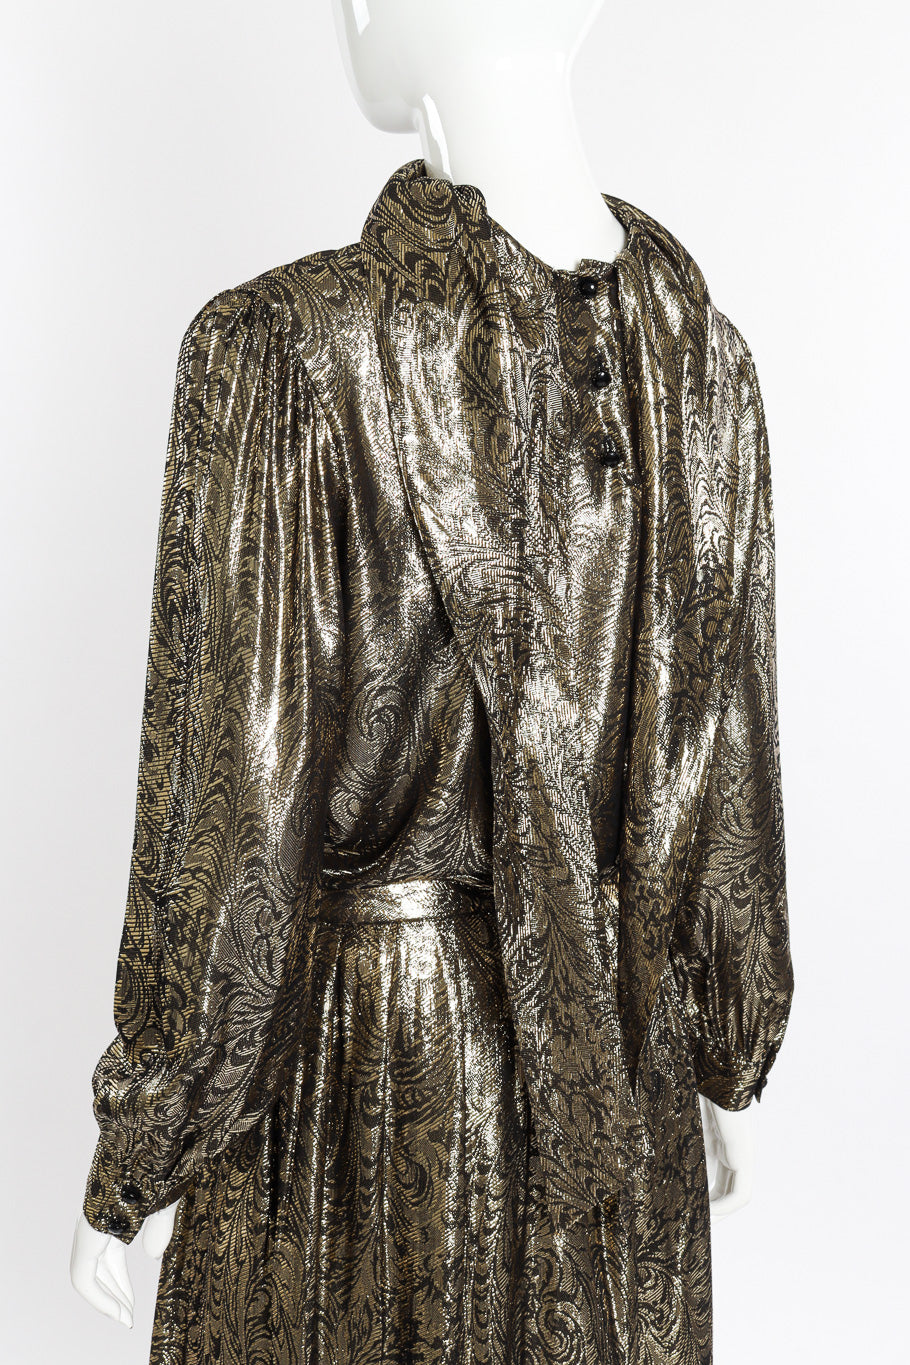 Vintage Nolan Miller Lamé Jacquard Blouse & Skirt Set back on mannequin closeup @recessla